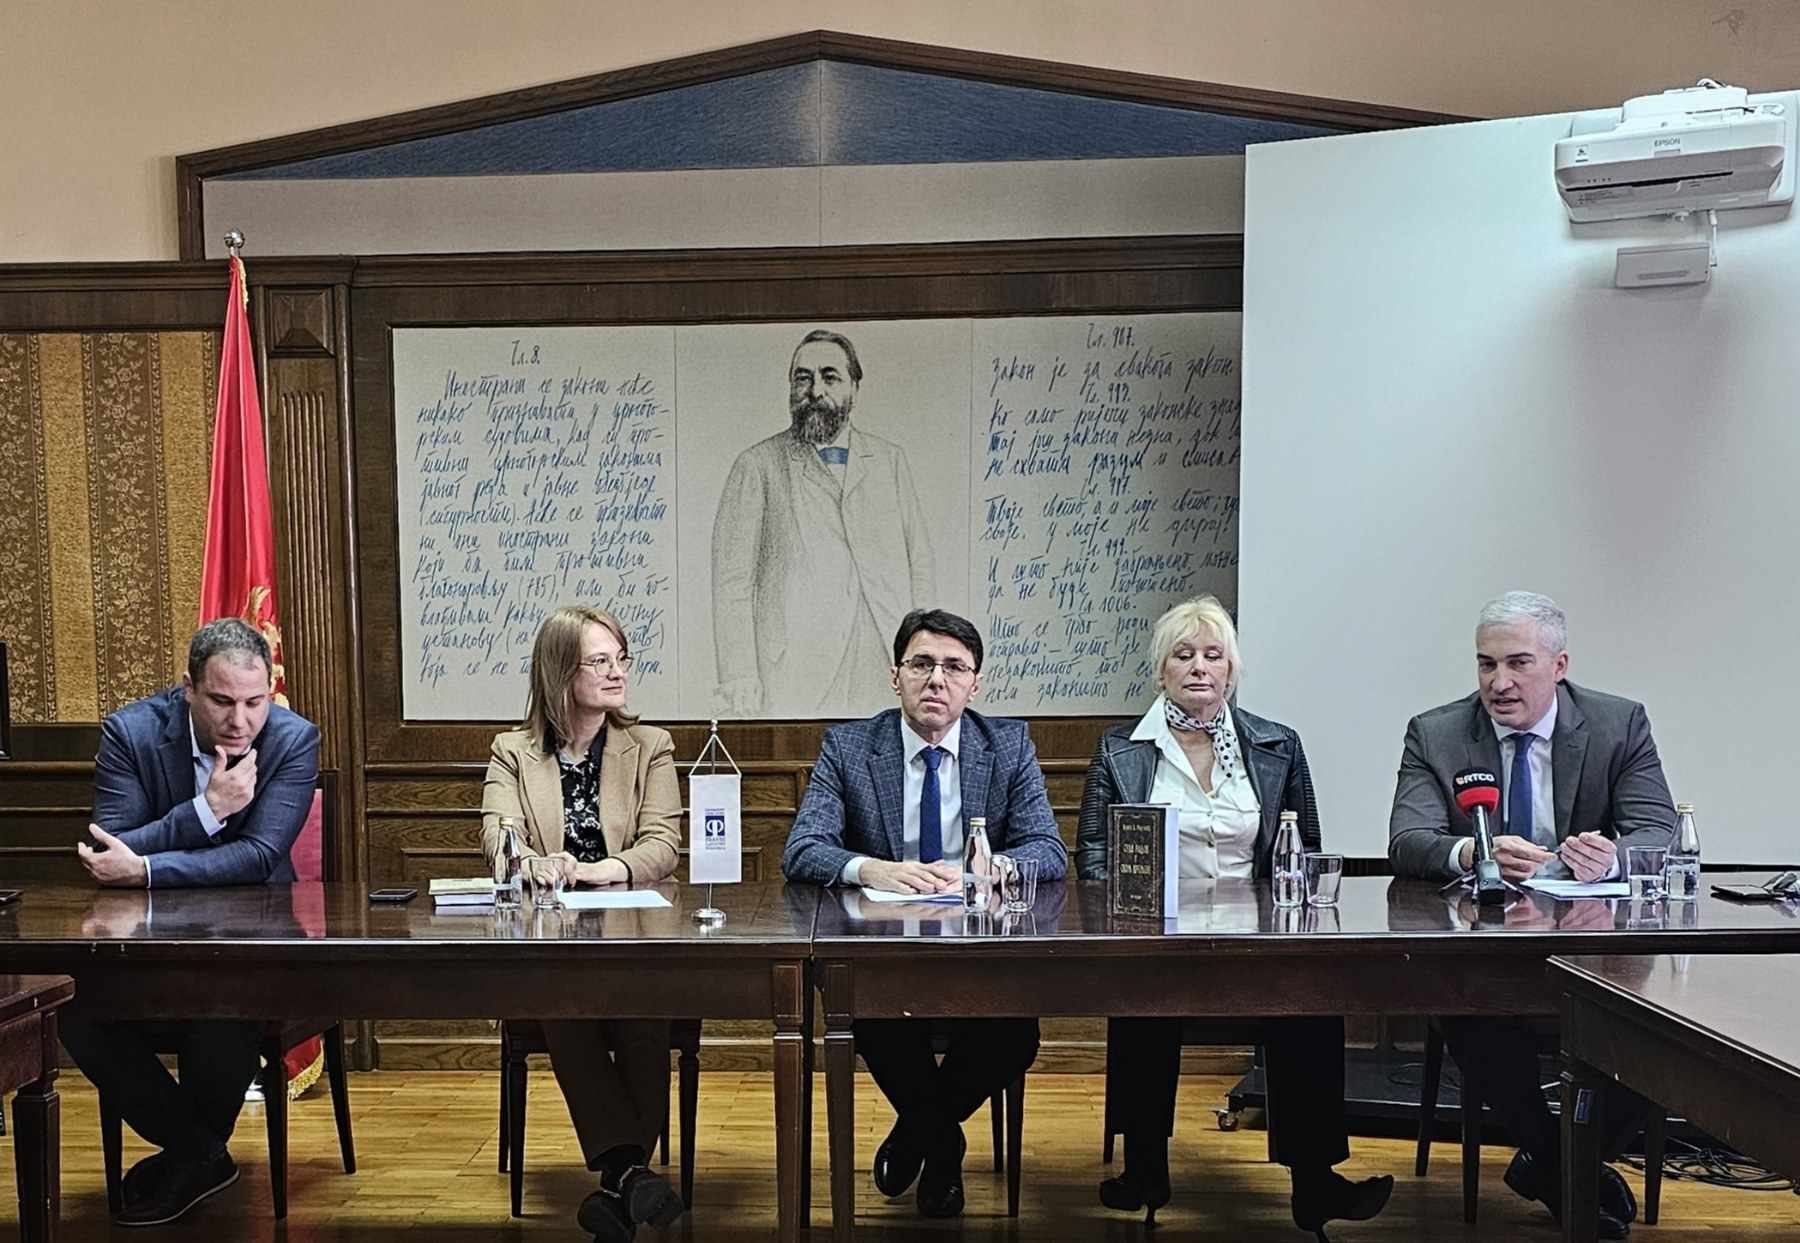 Održano predavanje "Sula, sudija i pravednik - nastanak i razvoj crnogorskog prirodnog prava"